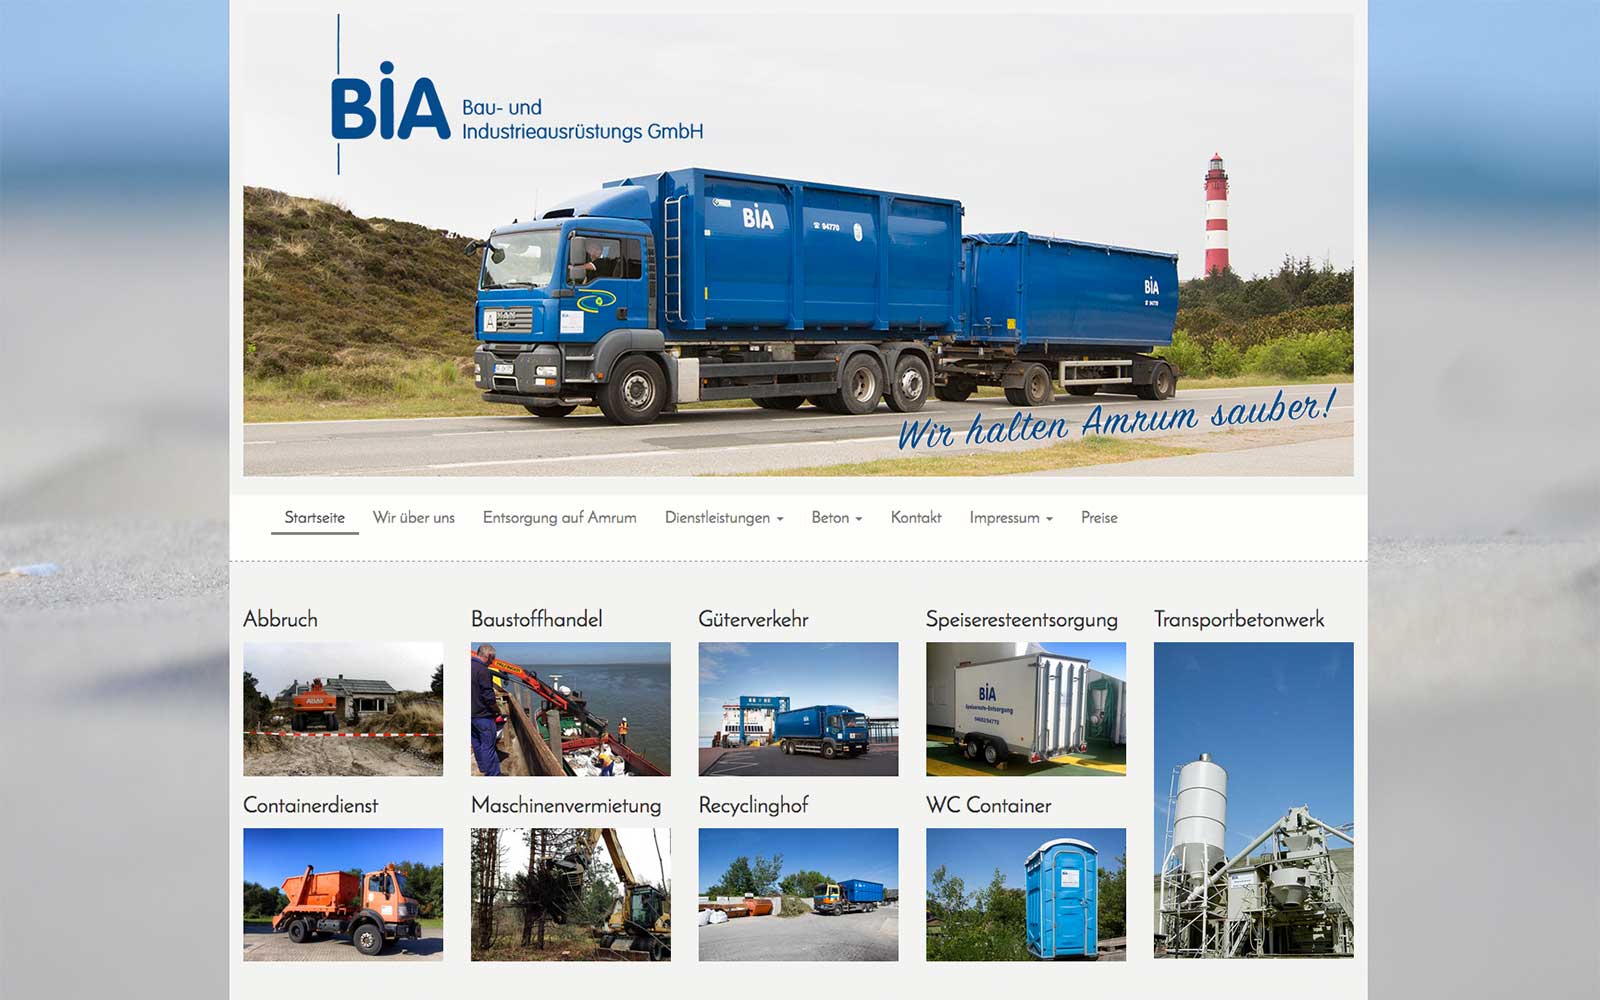 Die Firma BIA Bau- und Industrieausrüstungs GmbH ist seit September 2002 auf der Insel Amrum tätig